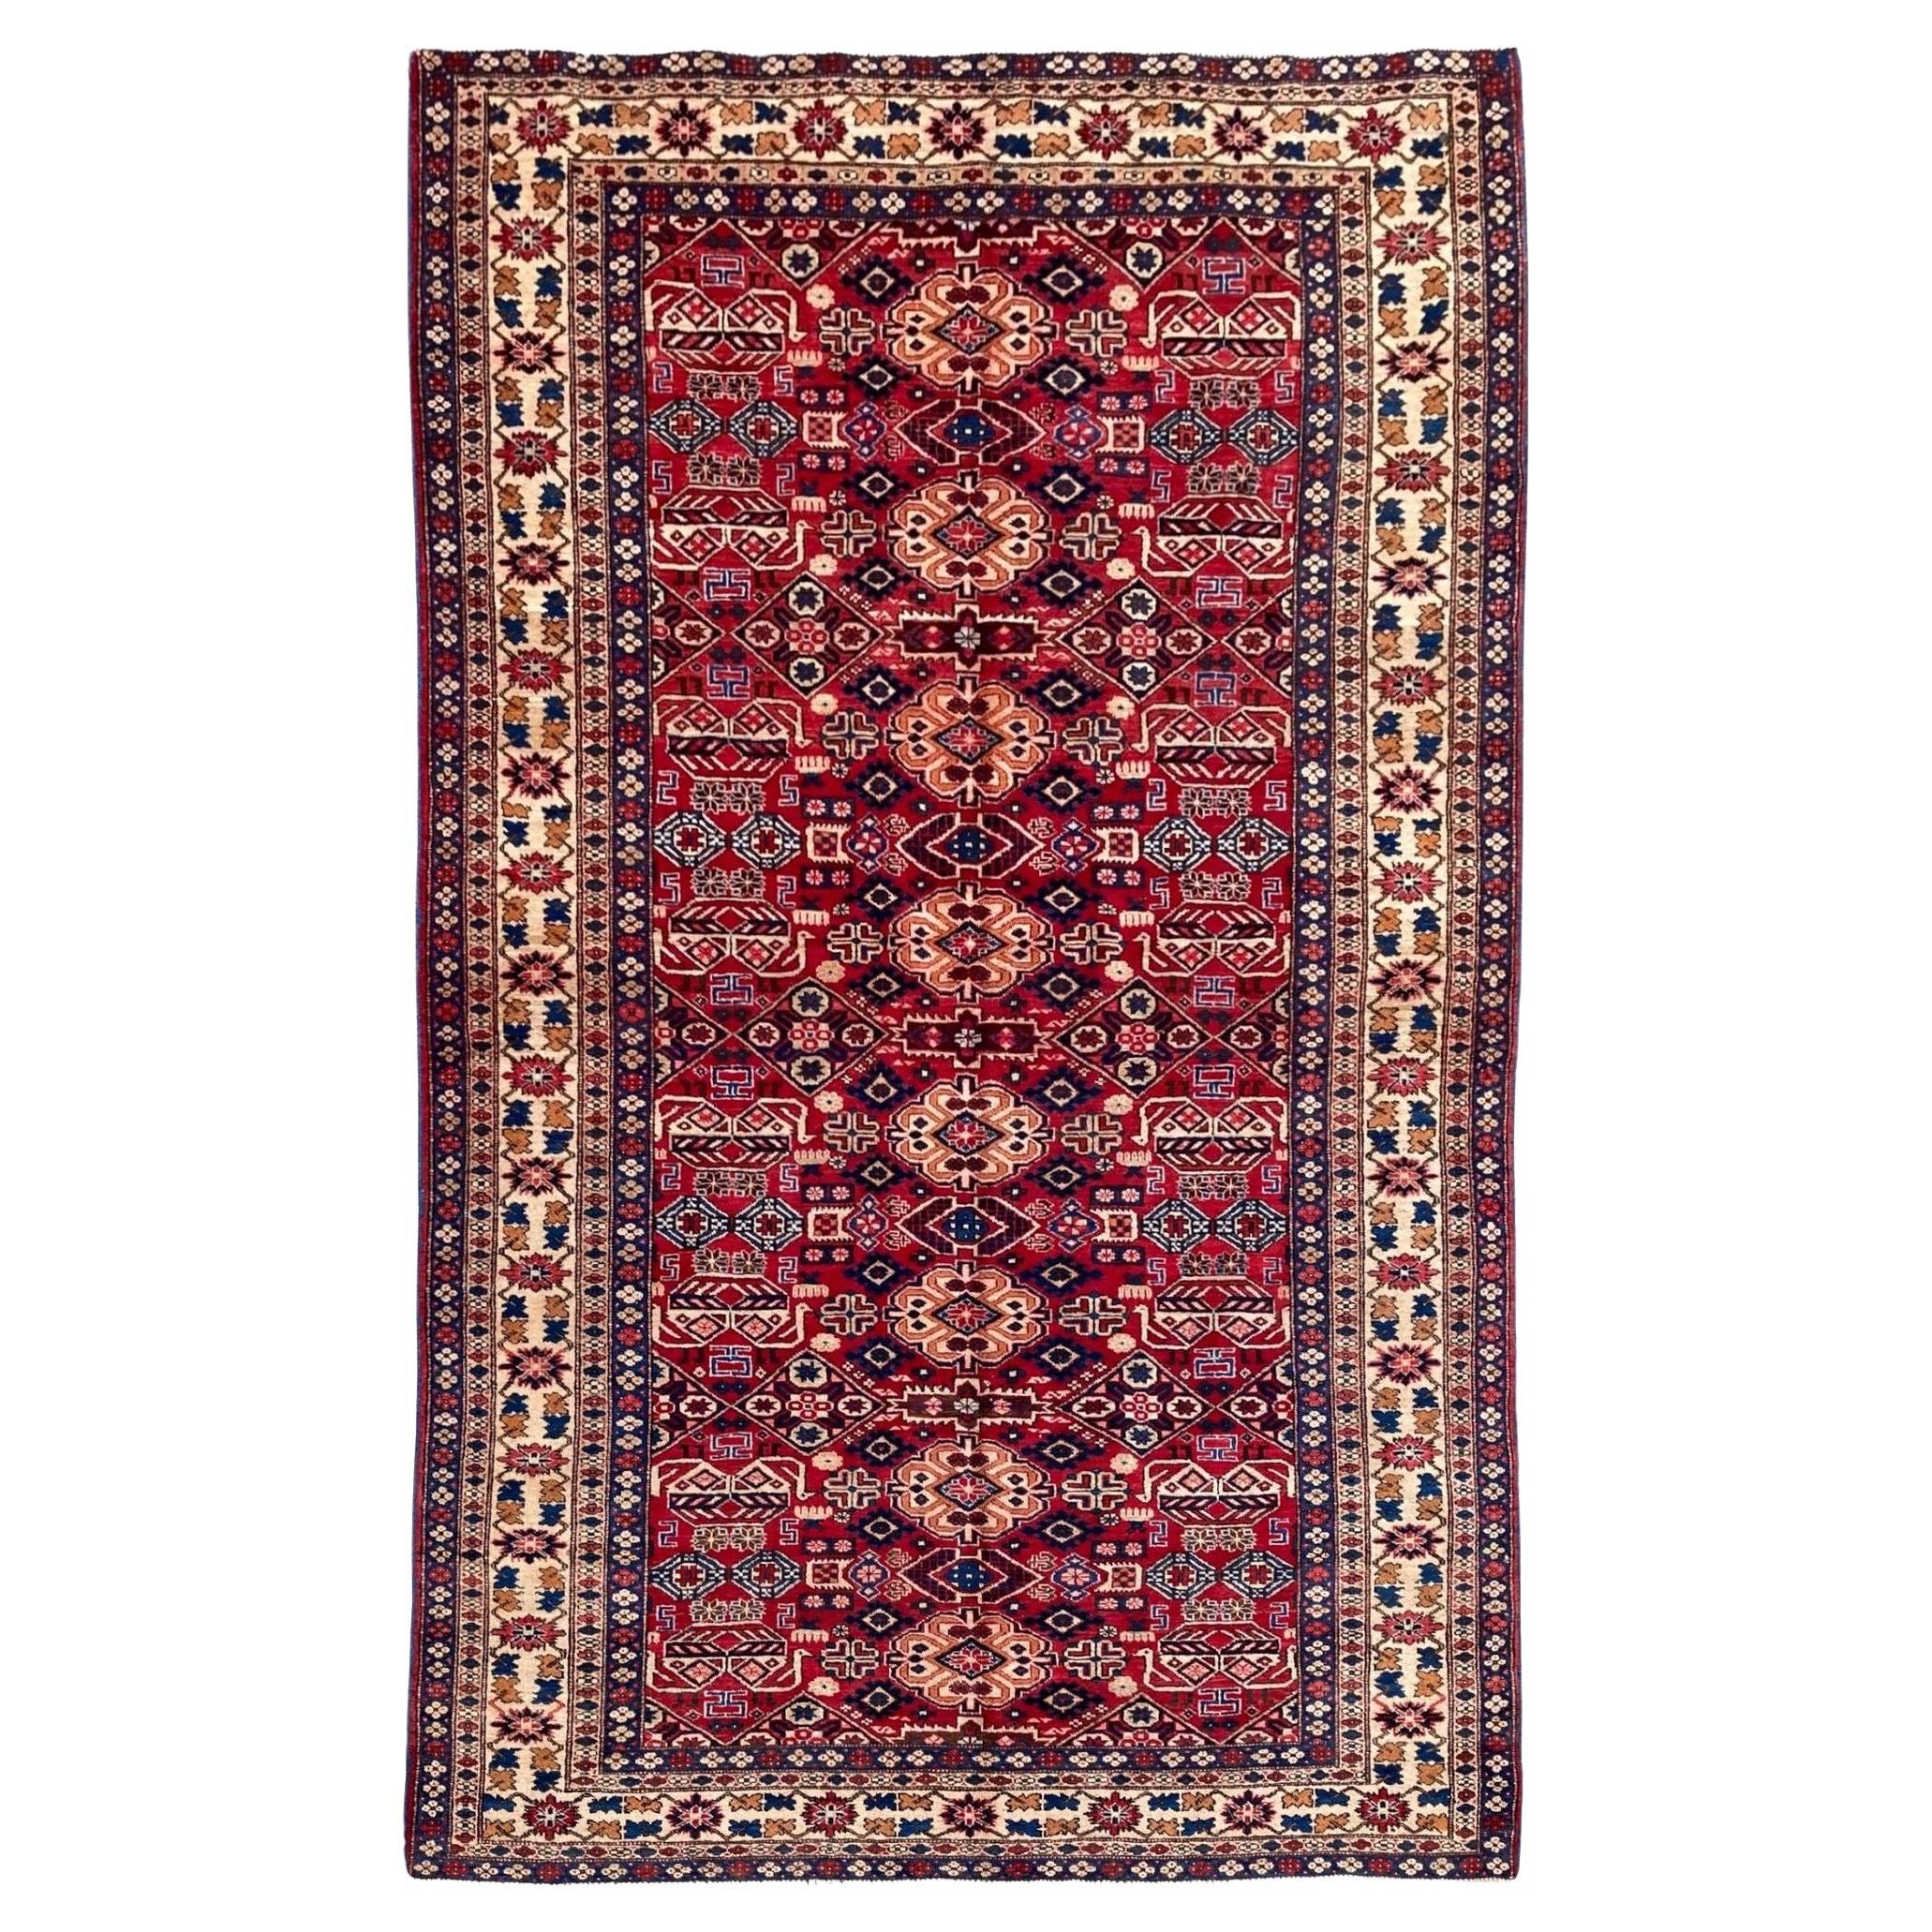 Antique Caucasian Shirvan Carpet 2.67m X 1.60m